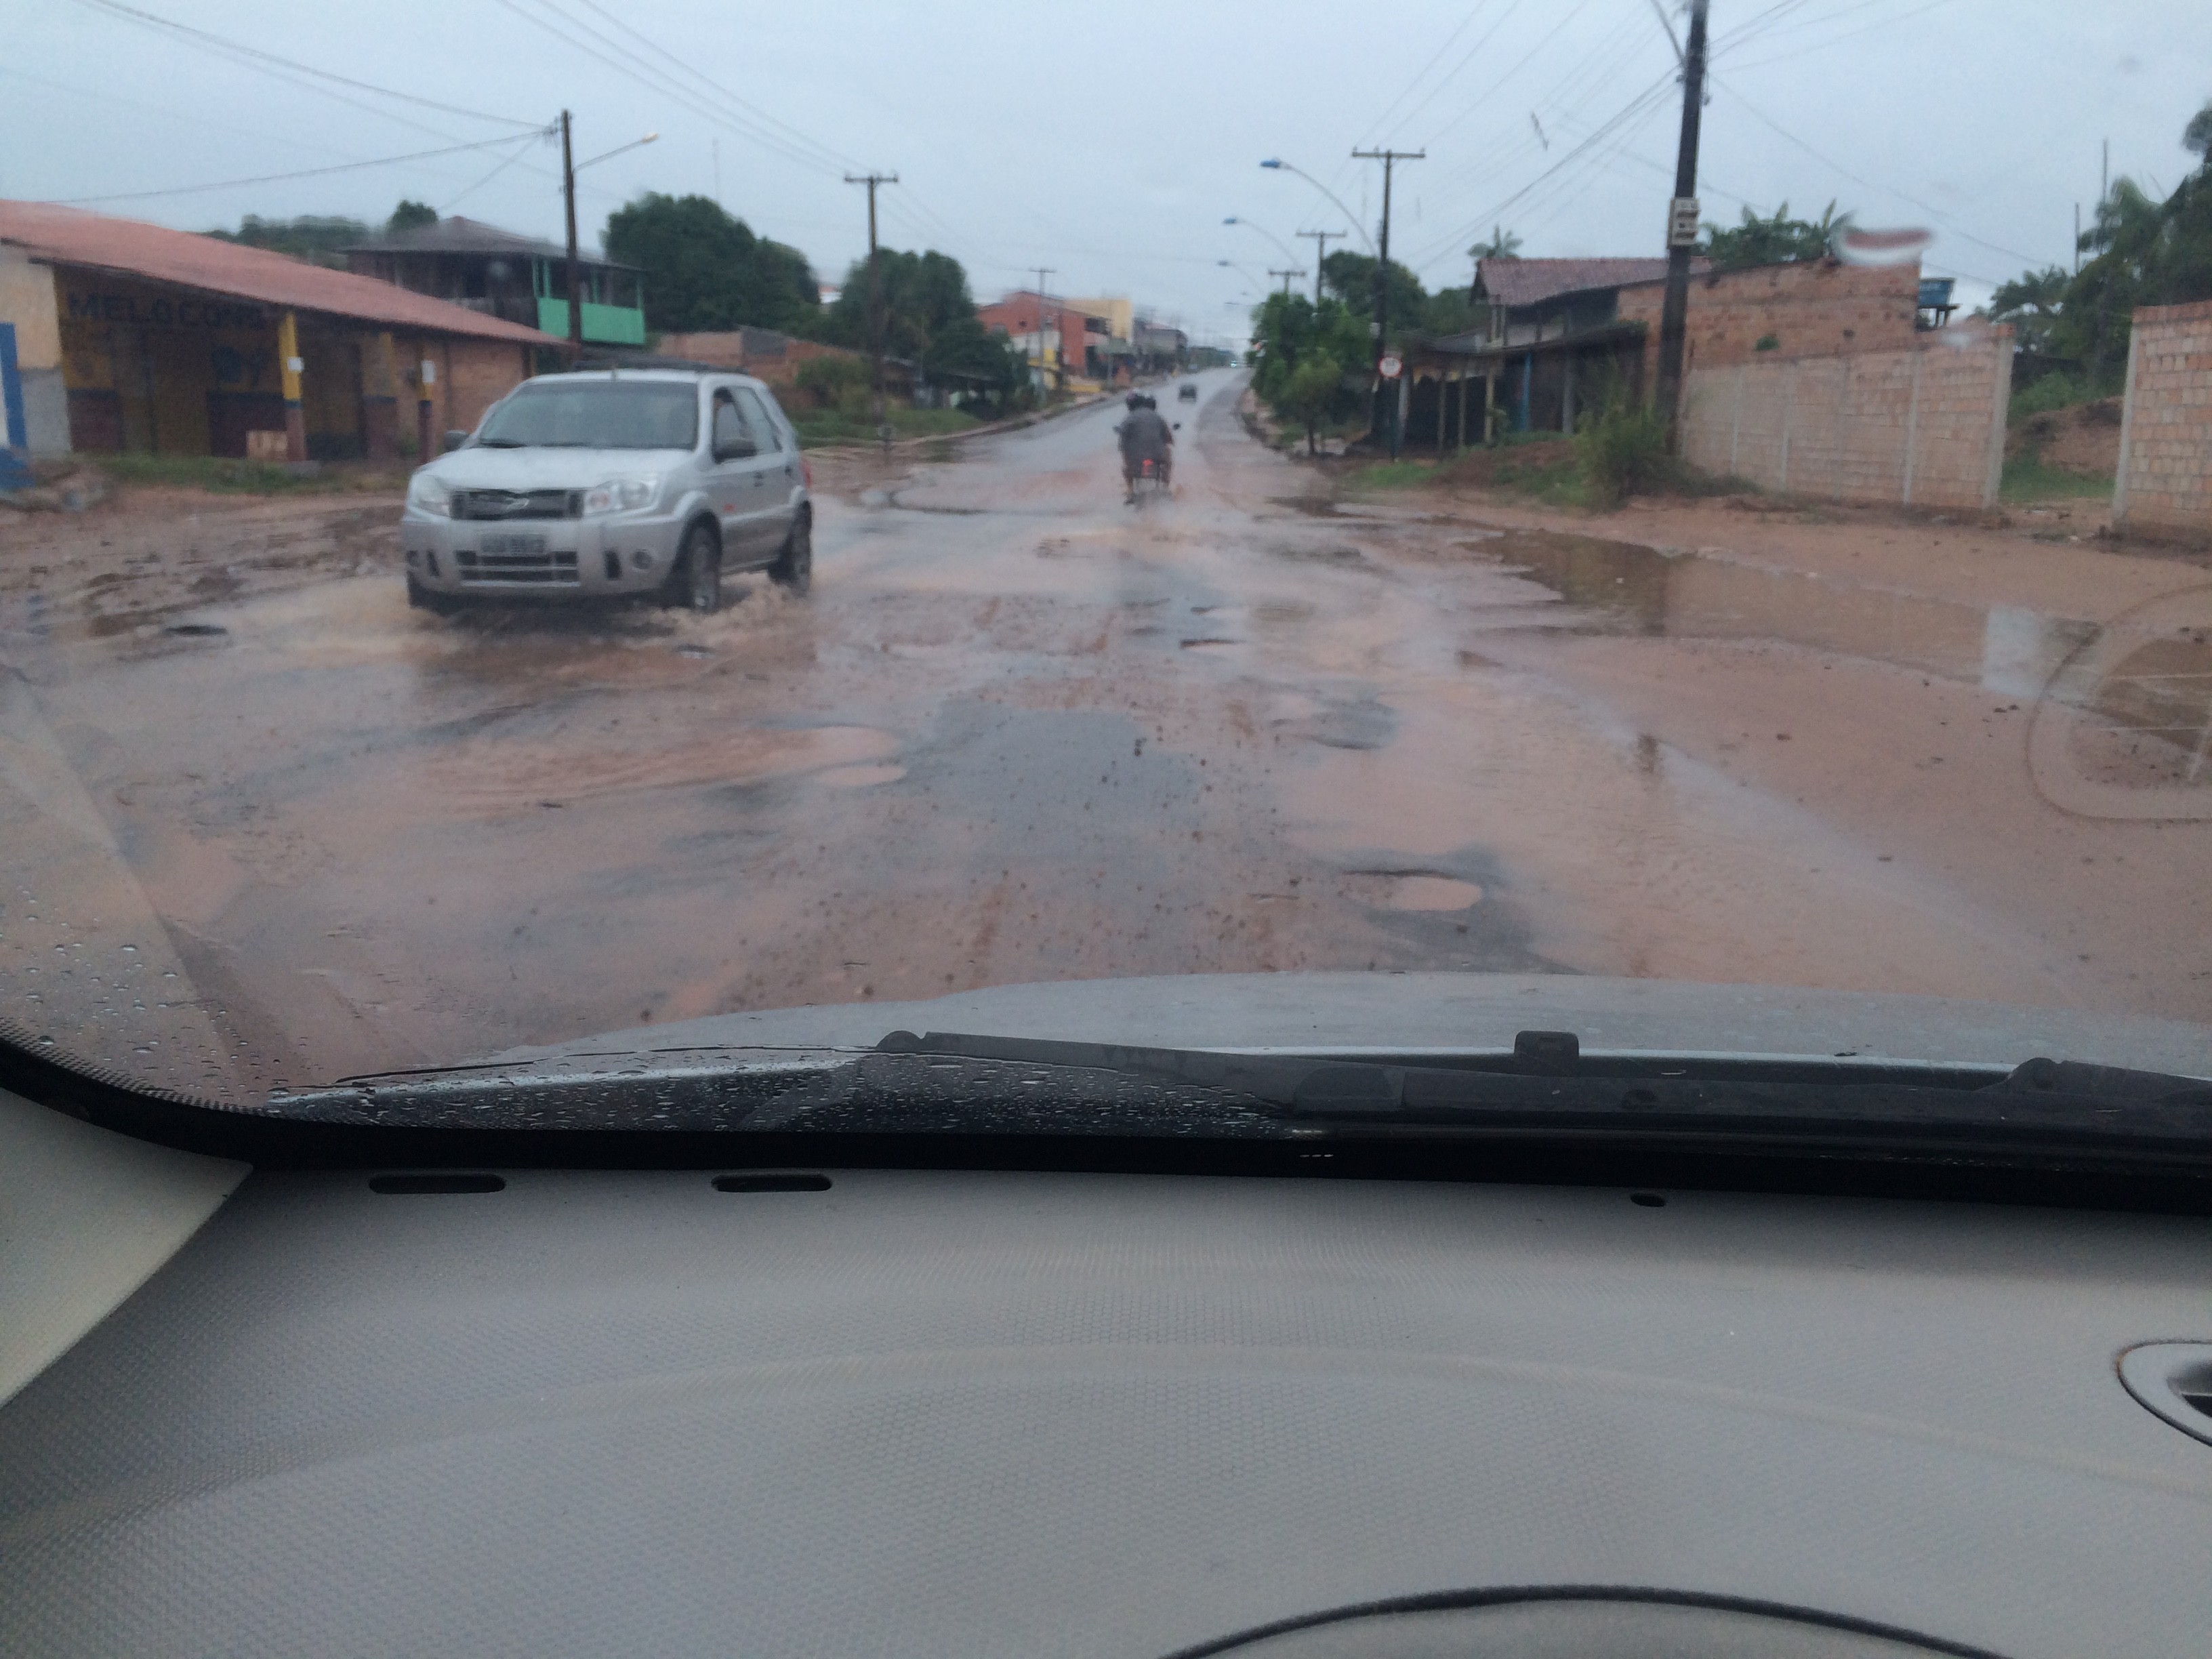 Buracos e lama dificultam trânsito em trecho da Av. Curuá-Una, diz internauta